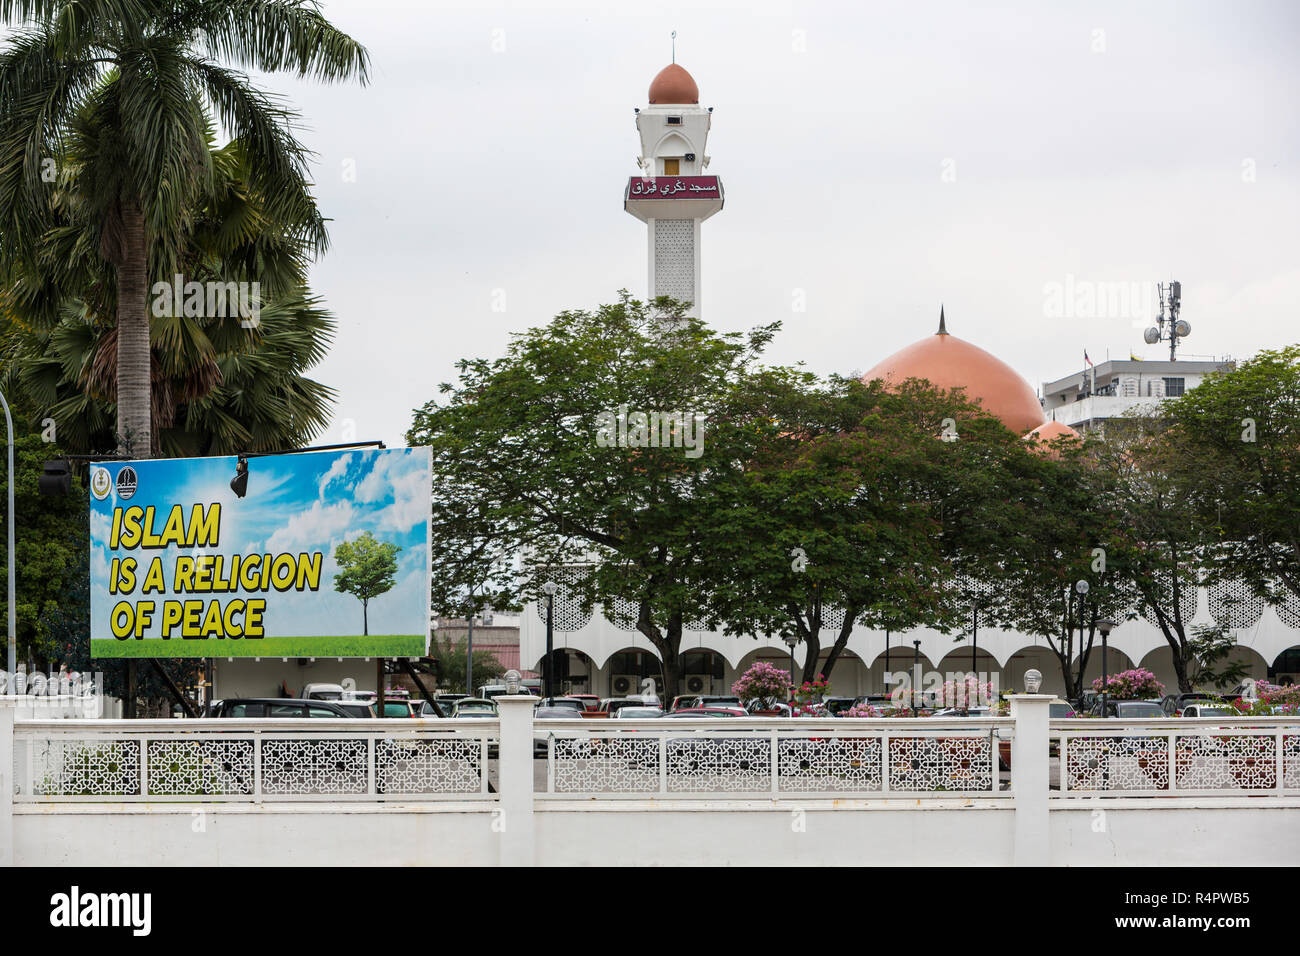 Der Islam eine Religion des Friedens, Masjid (Moschee) Sultan Idris Shah II, Masjid Negeri Perak im Hintergrund, Ipoh, Malaysia. Stockfoto